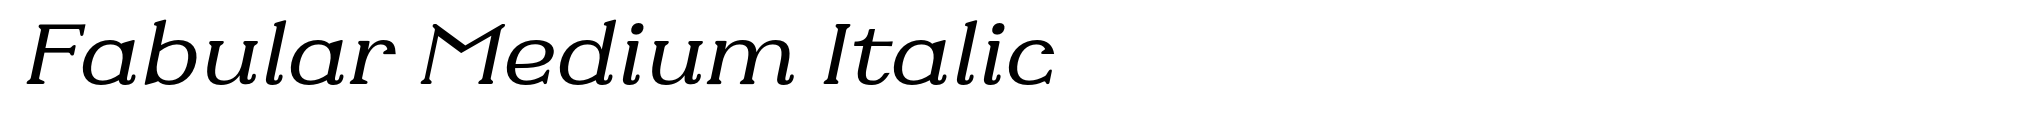 Fabular Medium Italic image